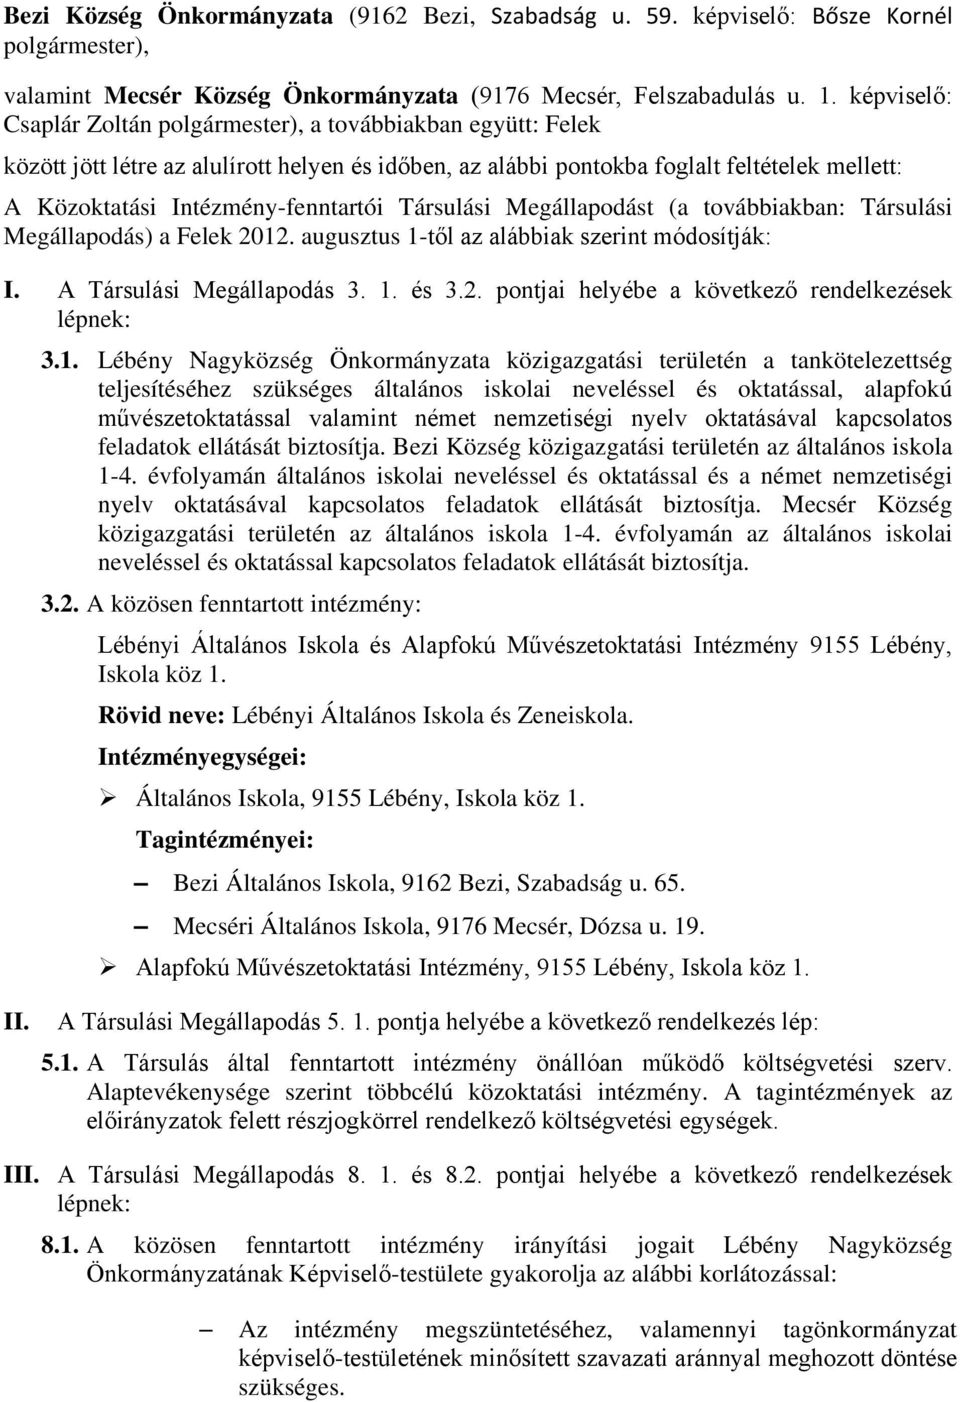 Intézmény-fenntartói Társulási Megállapodást (a továbbiakban: Társulási Megállapodás) a Felek 2012. augusztus 1-től az alábbiak szerint módosítják: I. A Társulási Megállapodás 3. 1. és 3.2. pontjai helyébe a következő rendelkezések lépnek: 3.